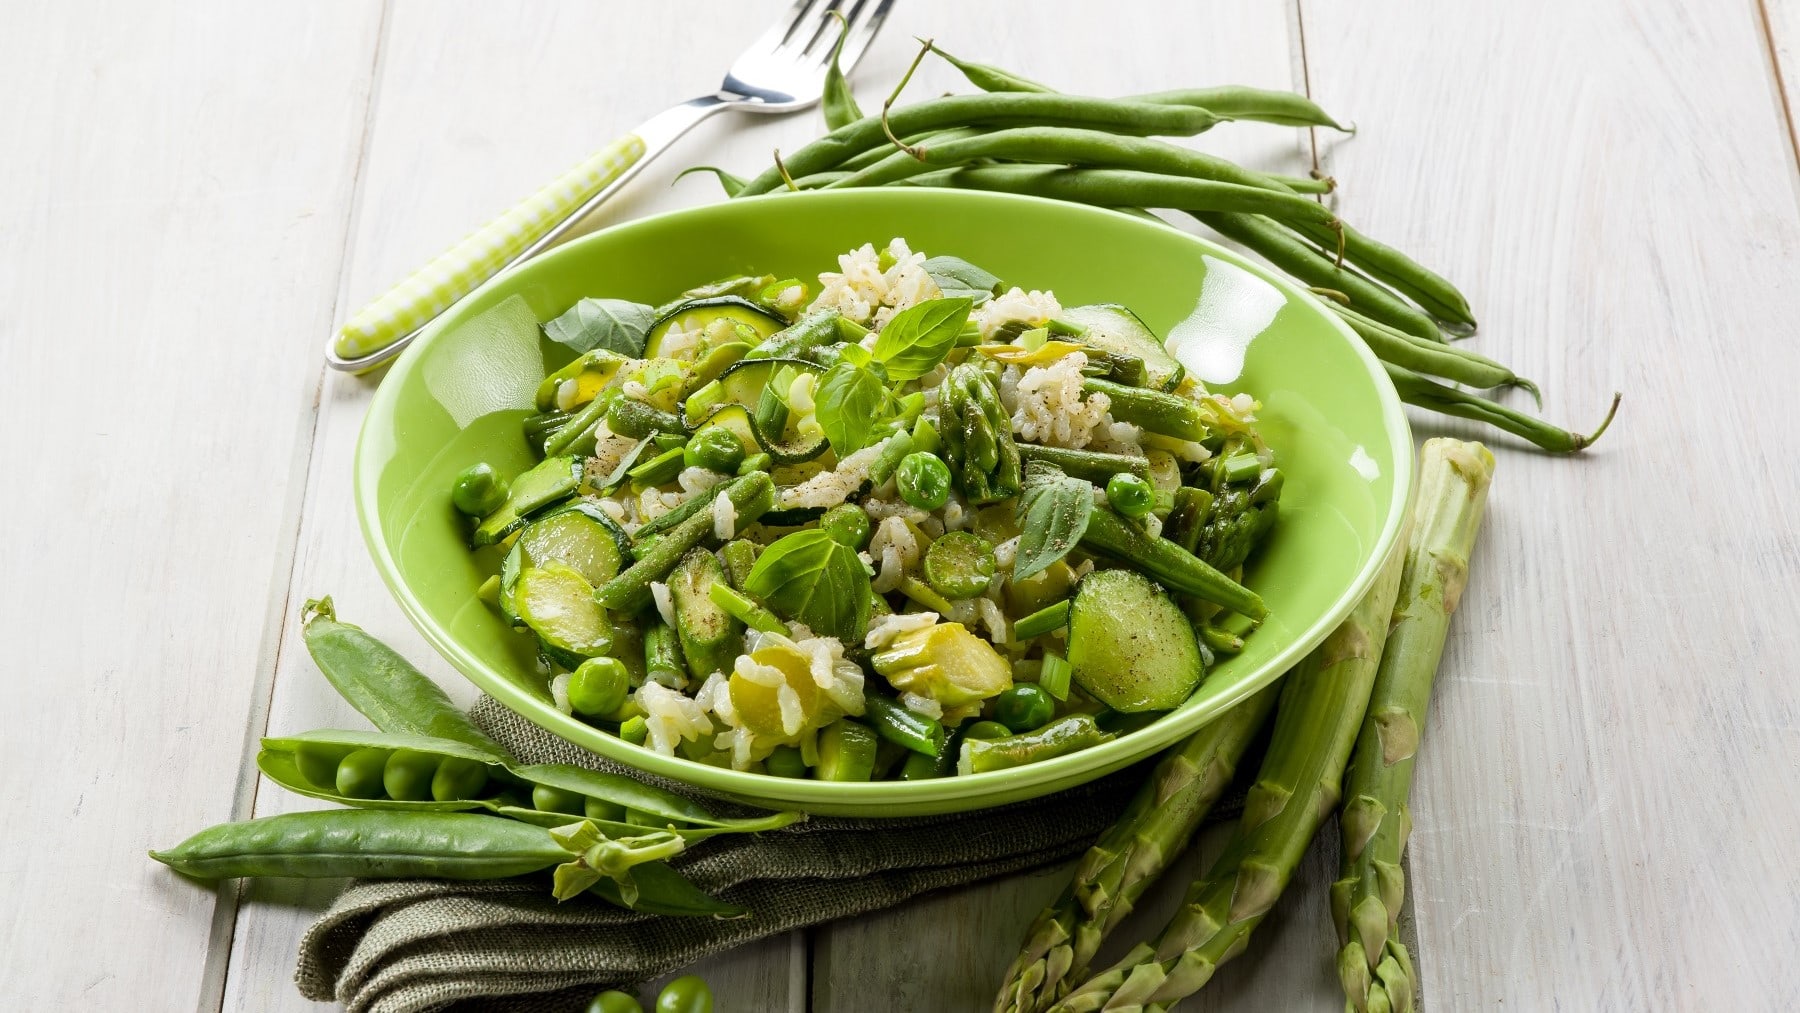 Grünes Spargel-Risotto mit Zucchini, Erbsen, Frühlingszwiebeln und frischem Basilikum, serviert in einer grünen Schale auf einem hellen Holztisch.